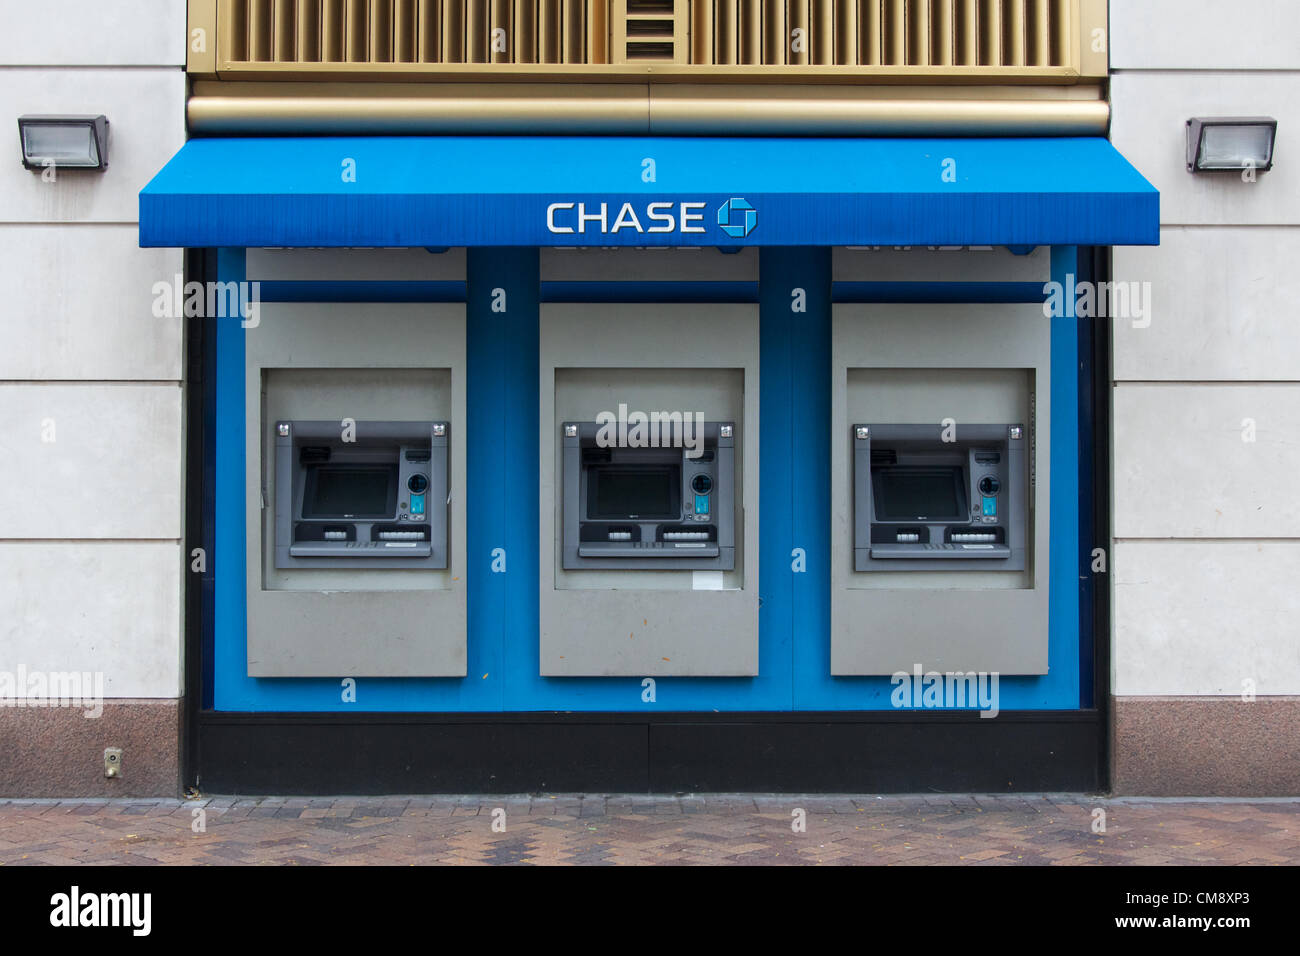 Stati Uniti d'America, NEW YORK, NY - 30 ottobre 2012: Chase Manhattan Bank bancomat hanno andato offline a causa dell'interruzione di energia elettrica a Manhattan, il giorno dopo l uragano Sandy ha colpito la città che non dorme mai. Foto Stock